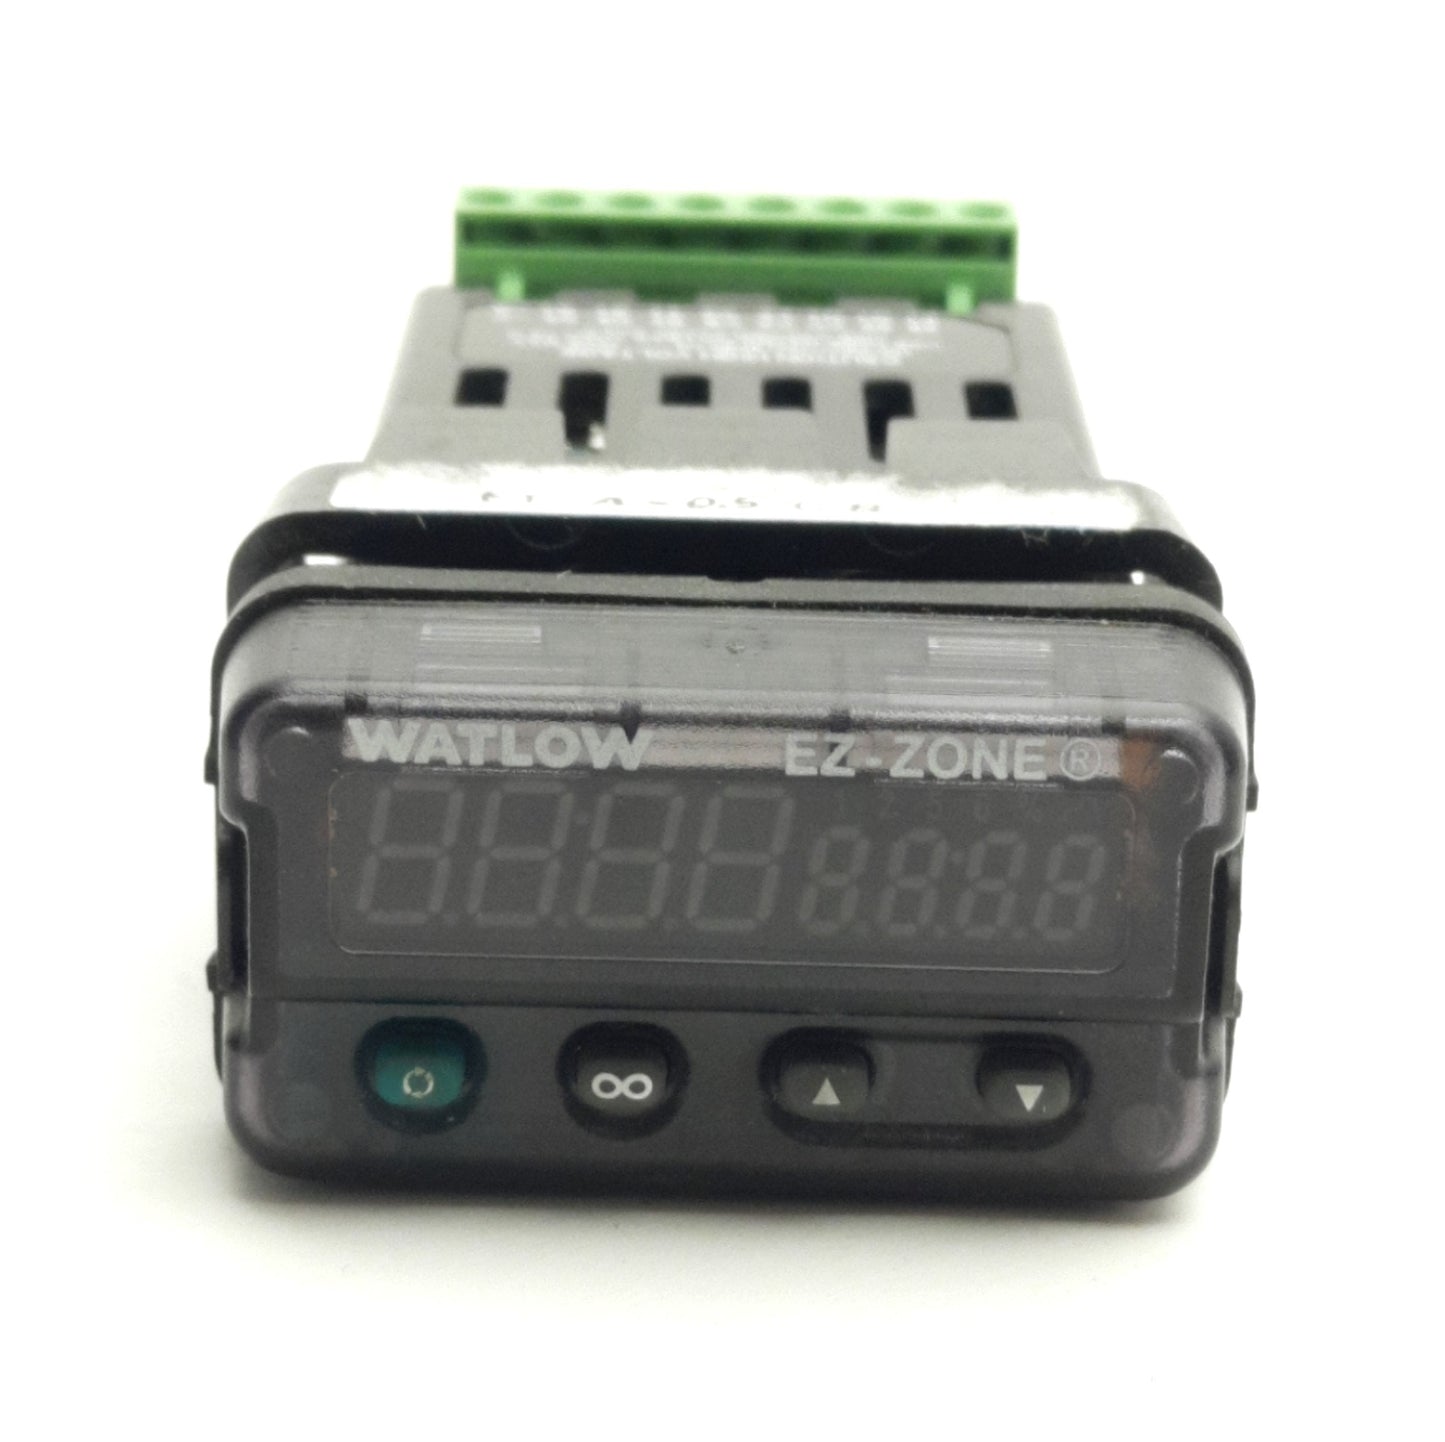 Watlow PM3C2FJ-1AAAAAA PID Controller Universal Input 100-240VAC Supply 5A Relay